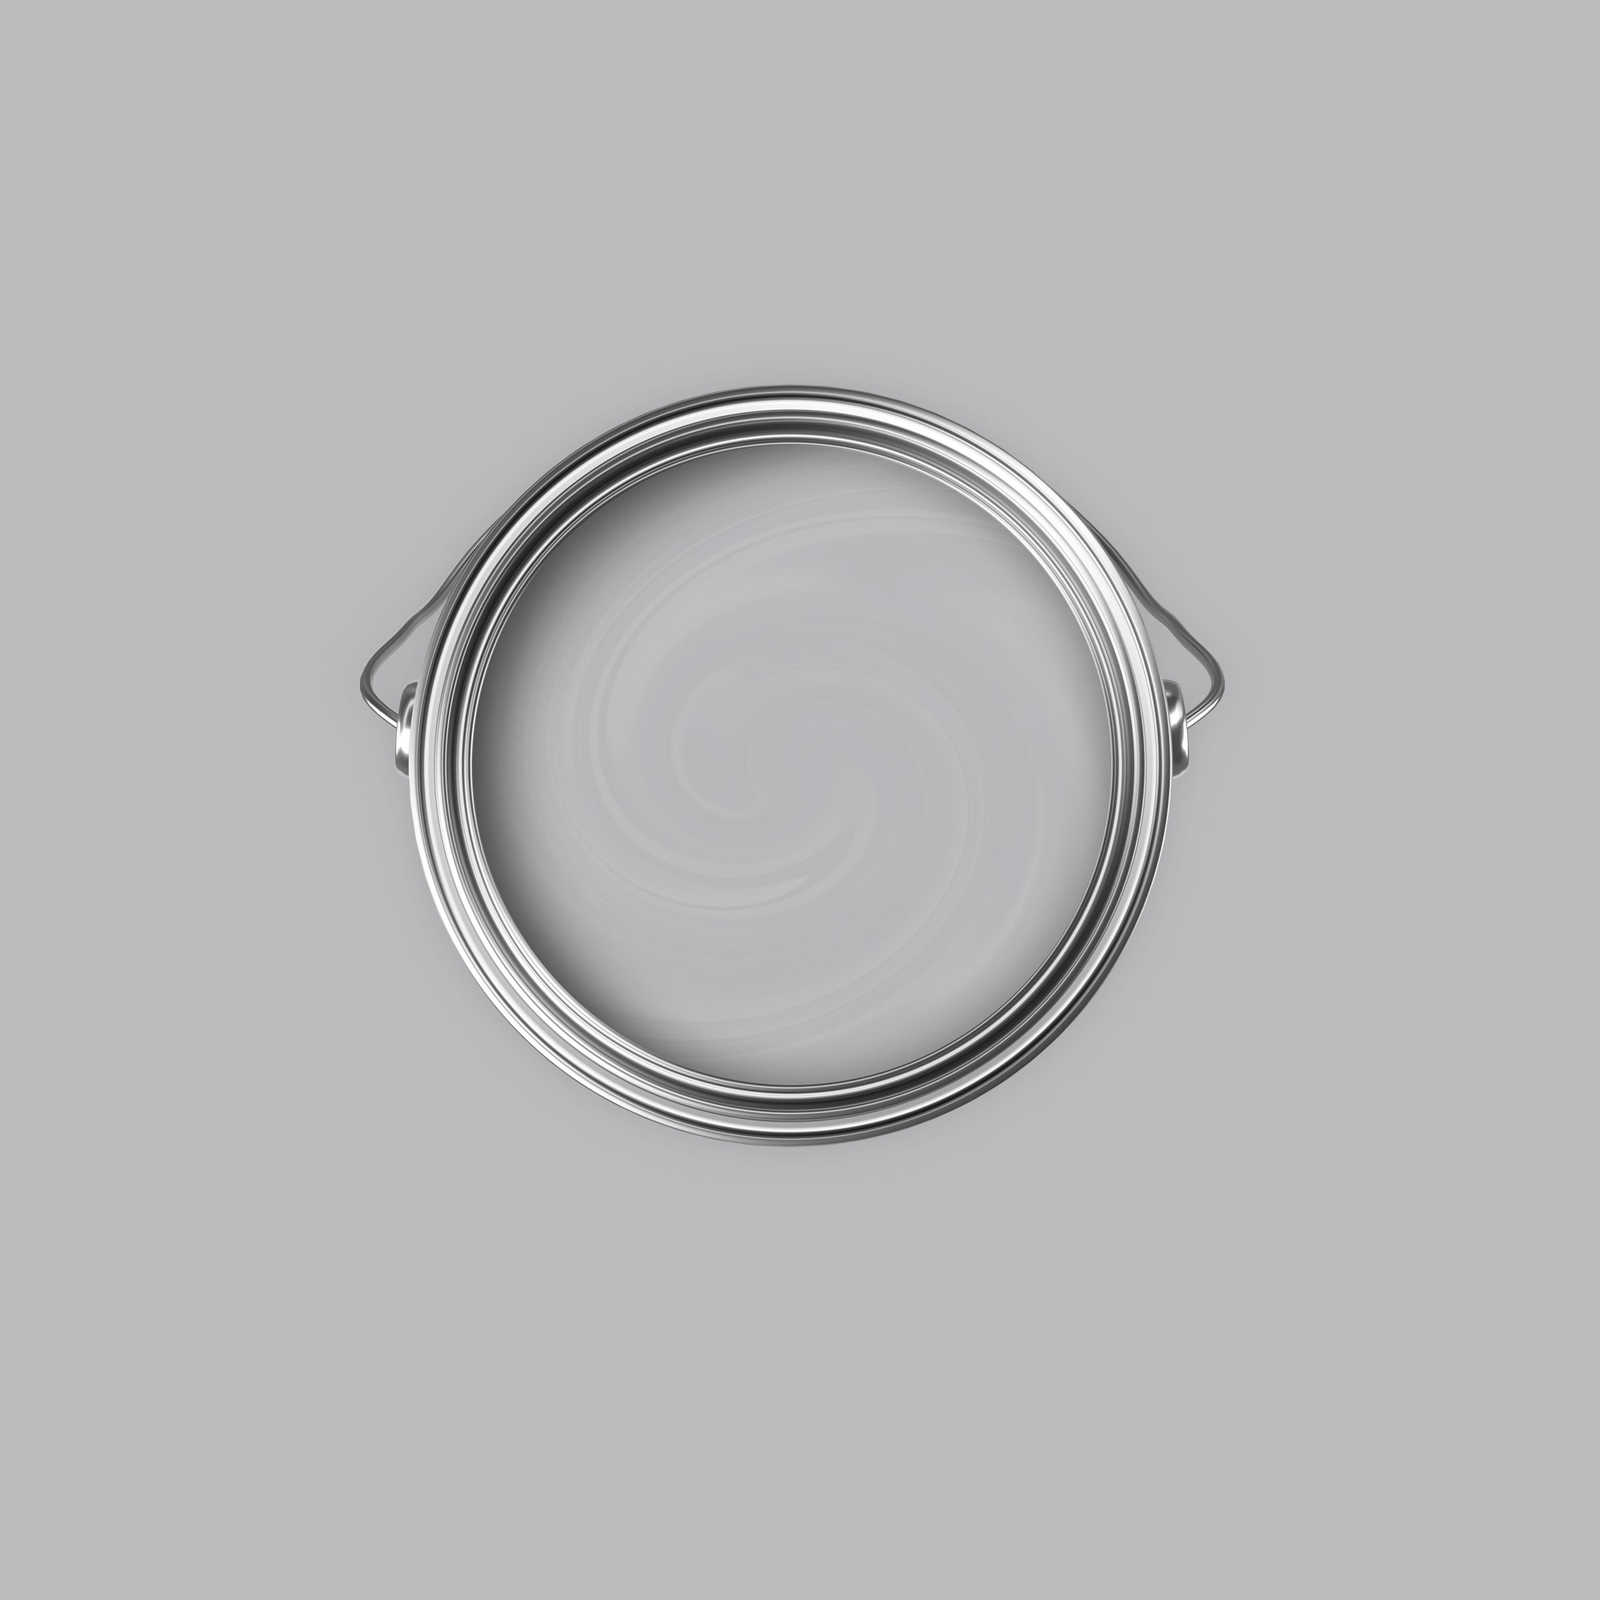             Premium Wandfarbe ausgeglichenes Silber »Industrial Grey« NW101 – 2,5 Liter
        